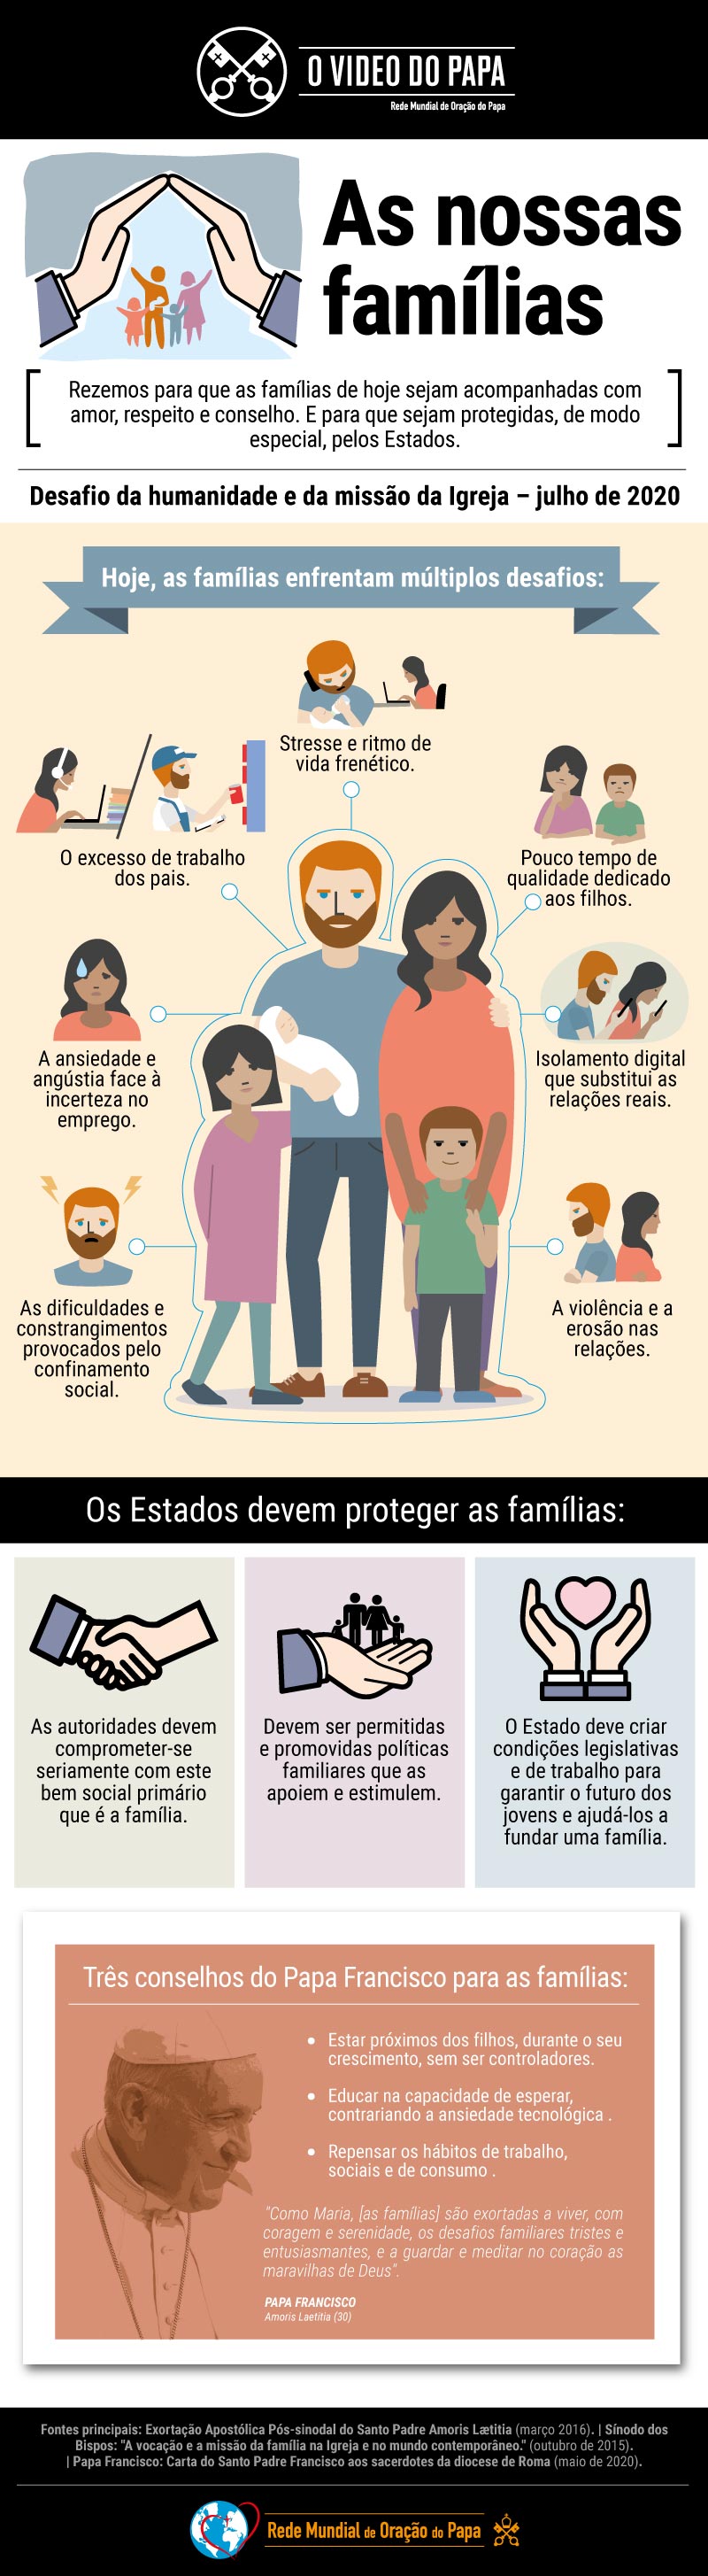 Infografia-TPV-7-2020-PT-O-Video-do-Papa-As-nossas-famílias.jpg